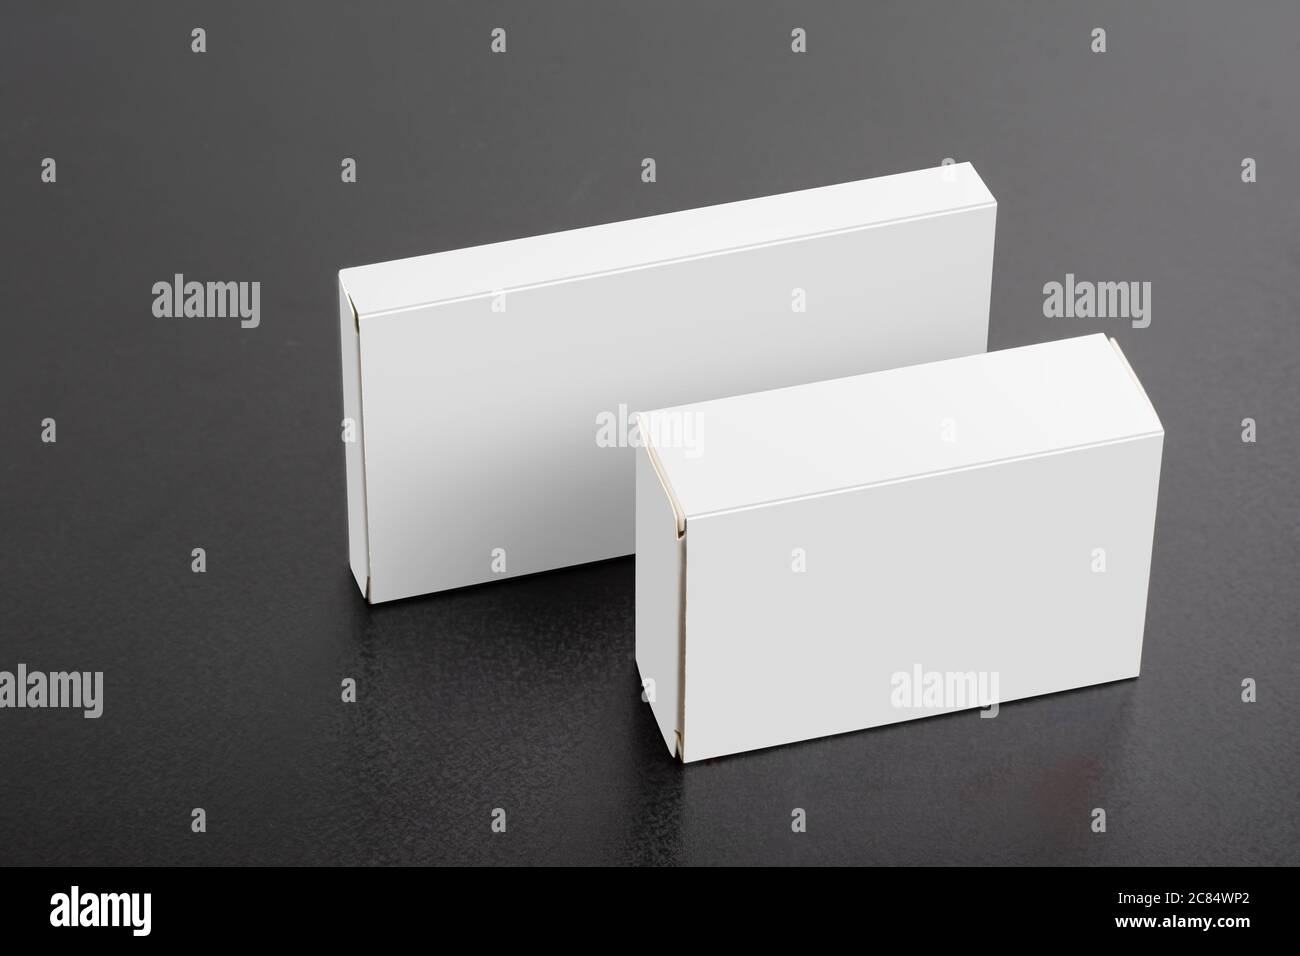 Zwei Pillboxen Pakete auf dunklem Hintergrund, editierbare Modell-up-Serie Vorlage bereit für Ihr Design, Auswahl Pfad enthalten. Stockfoto